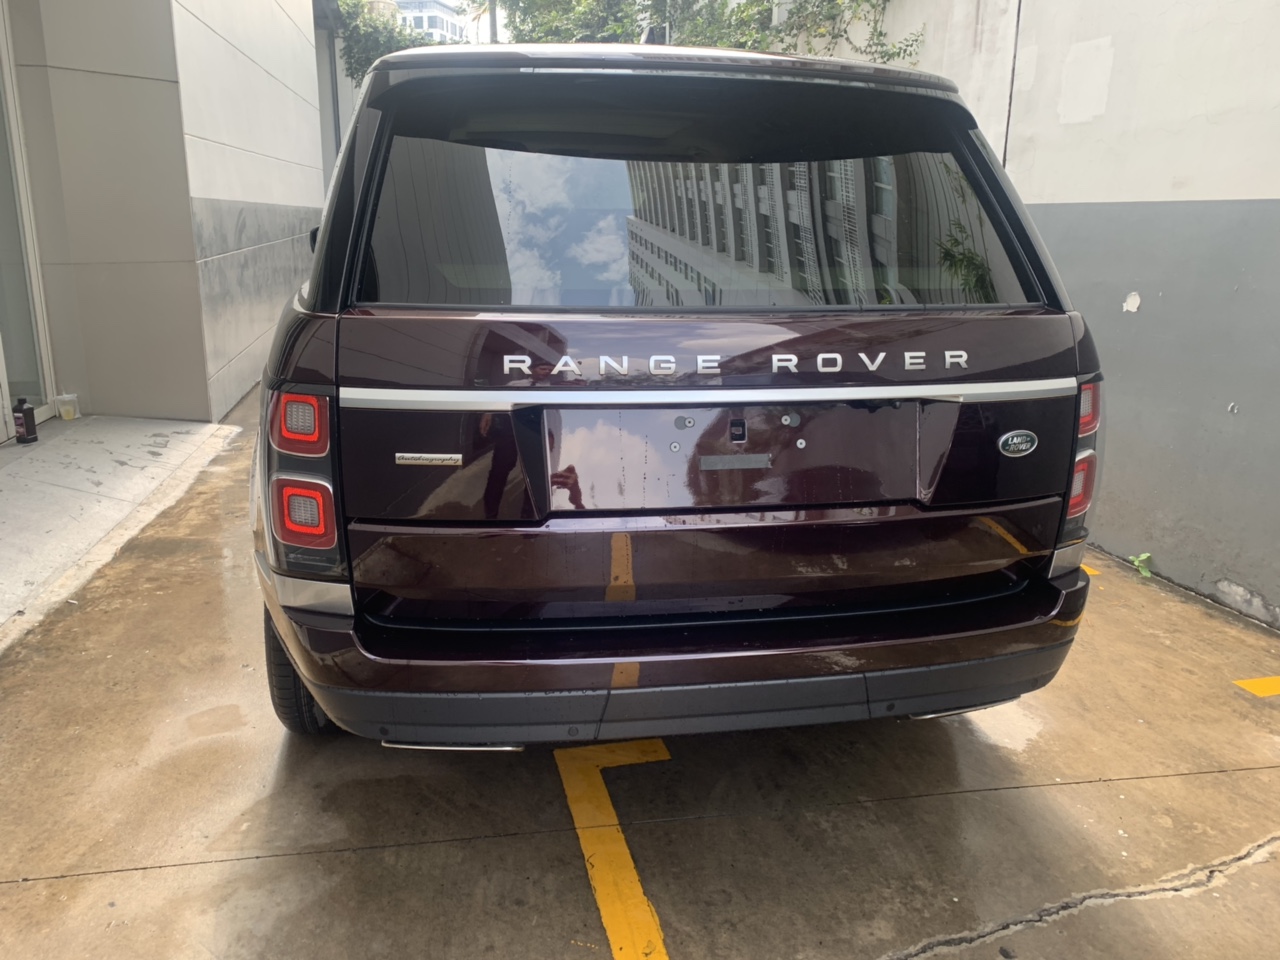 Giá Bán Của Xe Range Rover Autobiography Phiên Bản Dài Long Wheelbase ( LWB ) 2020 tại Việt Nam từ 11,560,000,000 đồng cho bản 3.0L Supercharged và 16,000,000,000đ bản 5.0 V8, tất nhiên là 21,000,000,000đ cho bản 4 ghế đặc biệt SVautobiography.